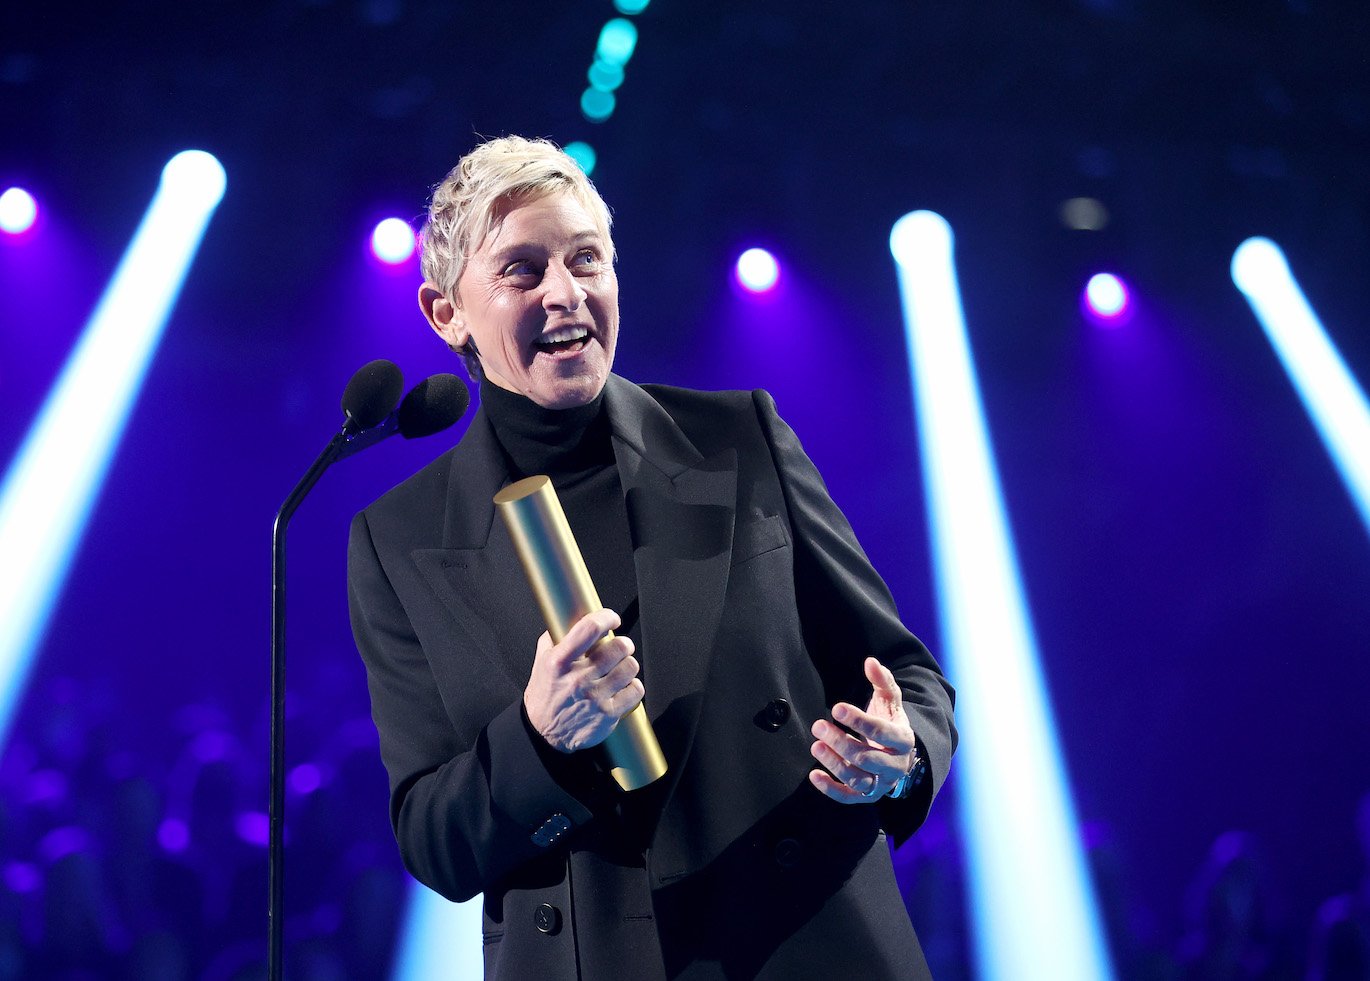 Ellen DeGeneres from 'The Ellen DeGeneres Show' smiling on stage